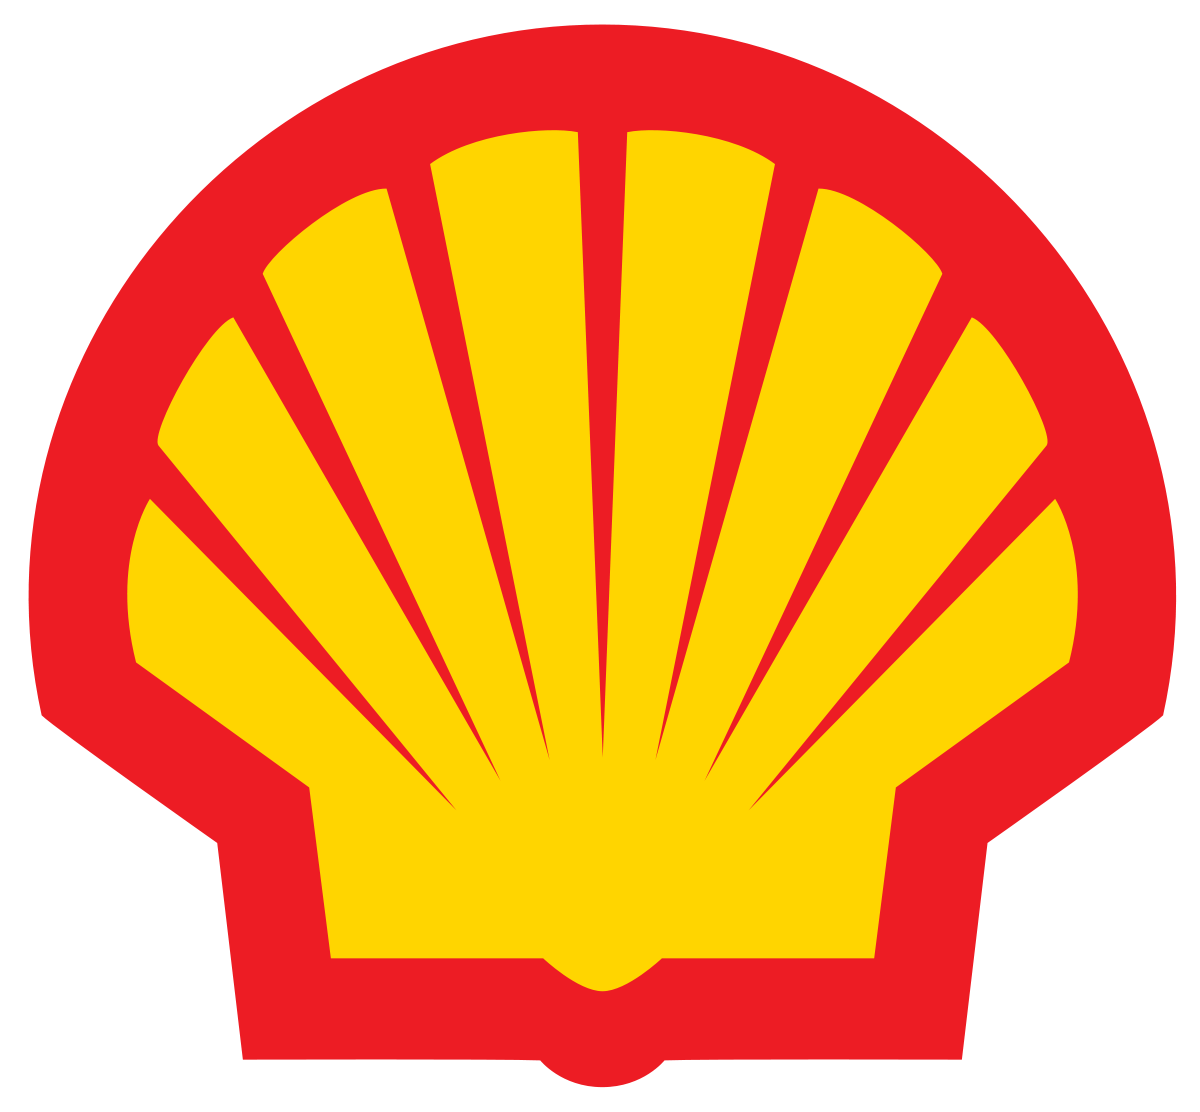 Shell Oil Company Logo - Shell Oil Company